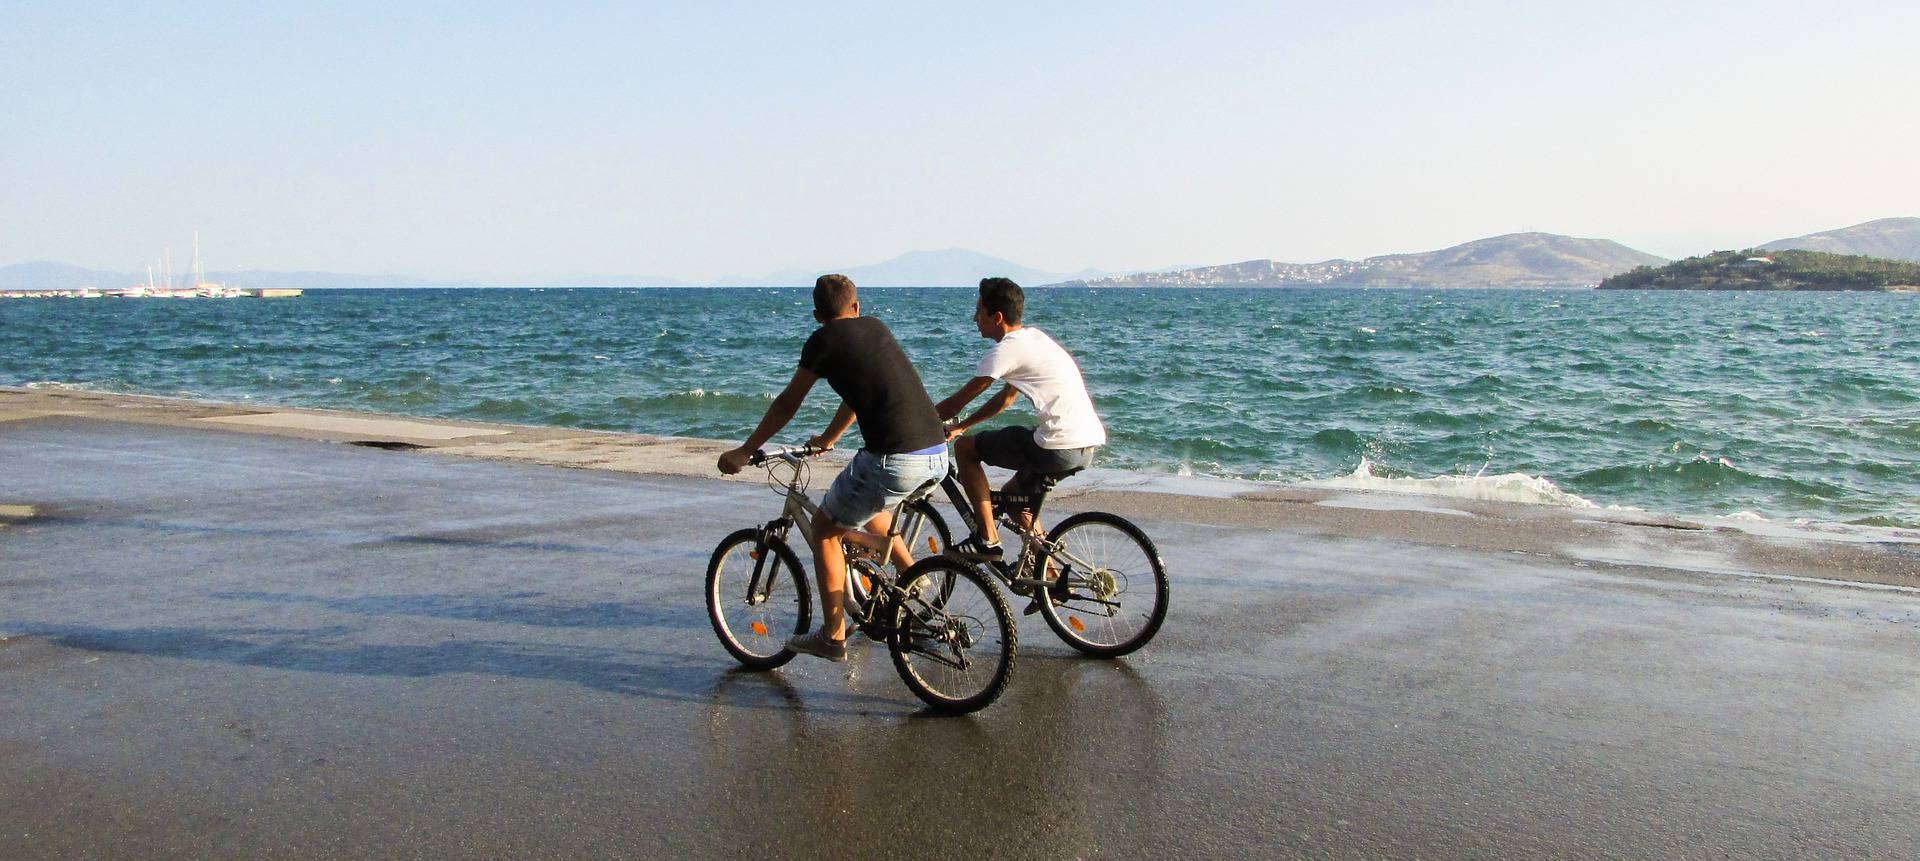 Balade à vélo sur la plage